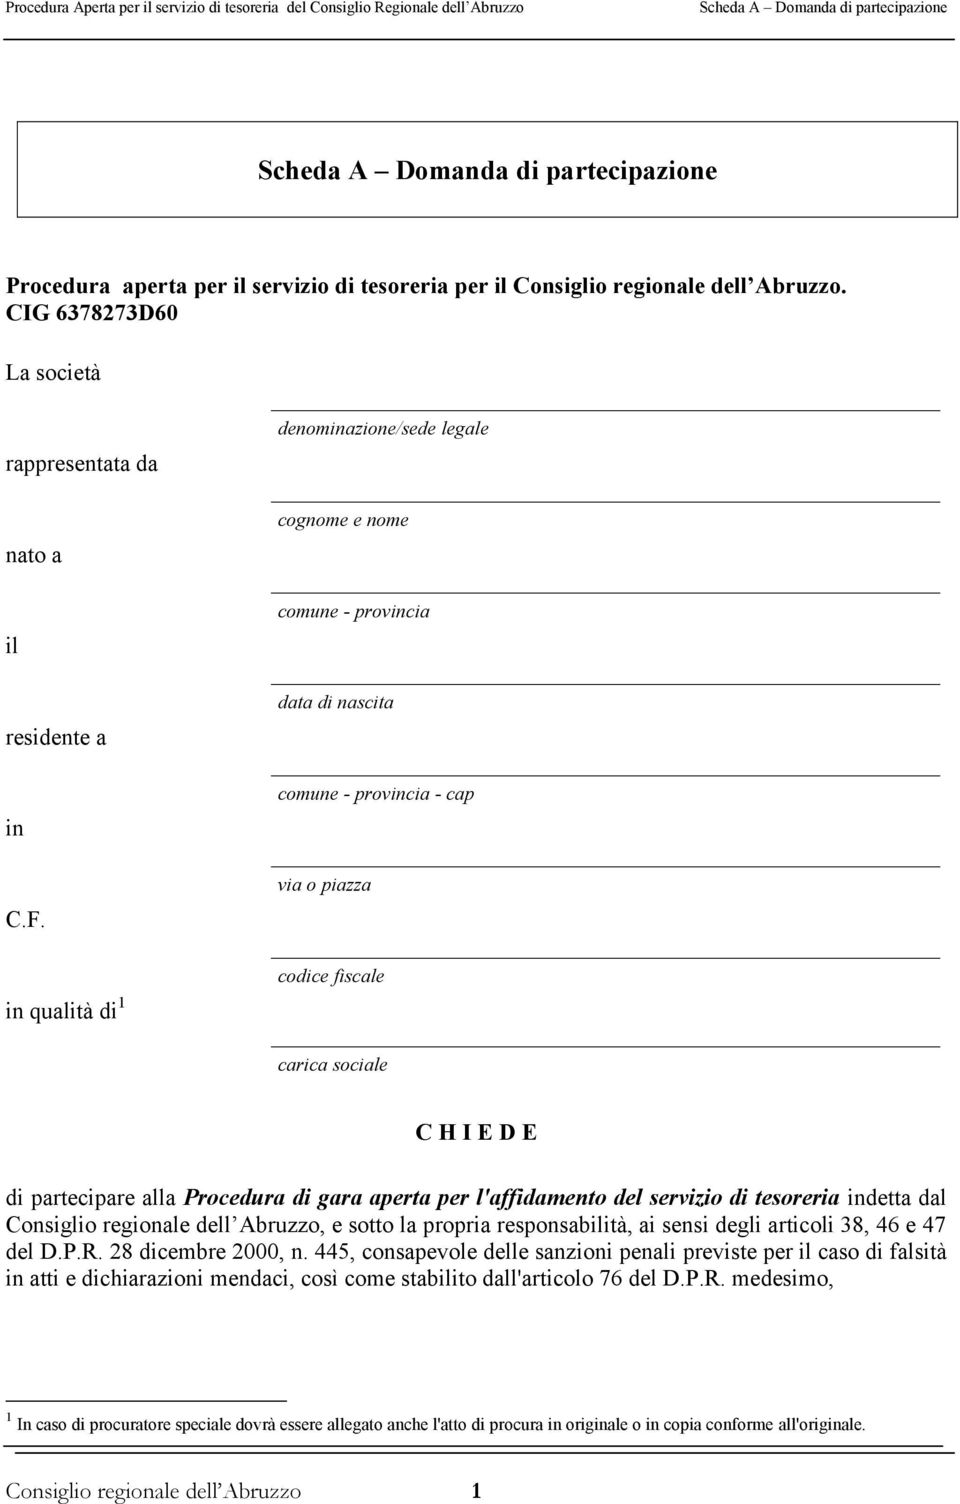 Procedura di gara aperta per l'affidamento del servizio di tesoreria indetta dal Consiglio regionale dell Abruzzo, e sotto la propria responsabilità, ai sensi degli articoli 38, 46 e 47 del D.P.R.